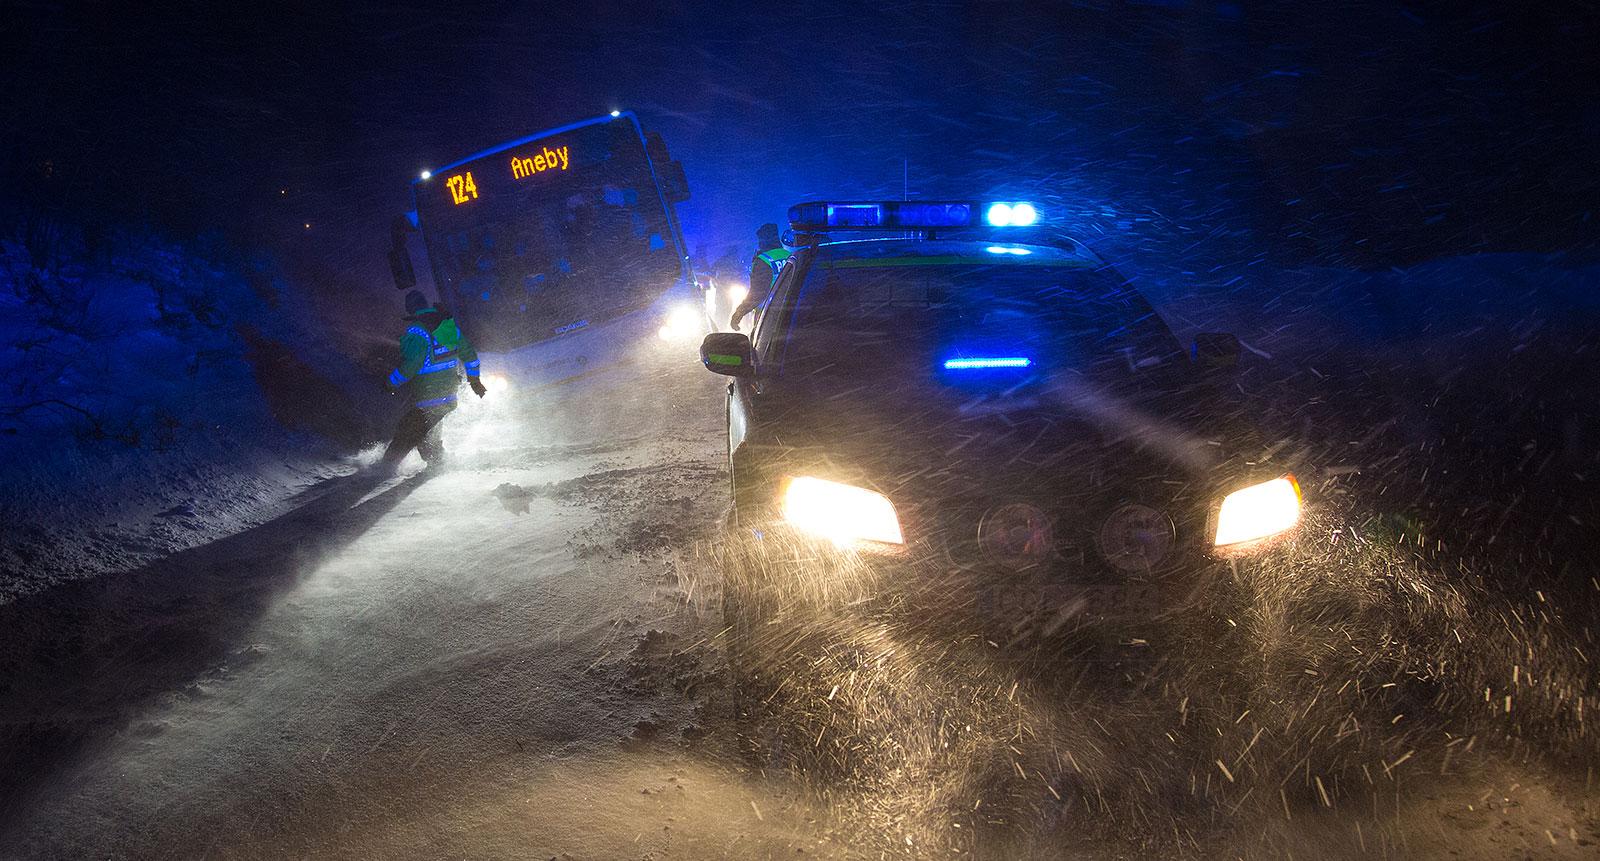 Linjebuss 124 körde vid 19-tiden av vägen i det svåra väglaget vid Järsnäs på väg 132. I bussen färdades enligt polisen ett 15-tal resenärer. 
Inga kända personskador. Ersättningsbuss fick sättas in, så resenärerna kunde resa vidare mot Aneby.